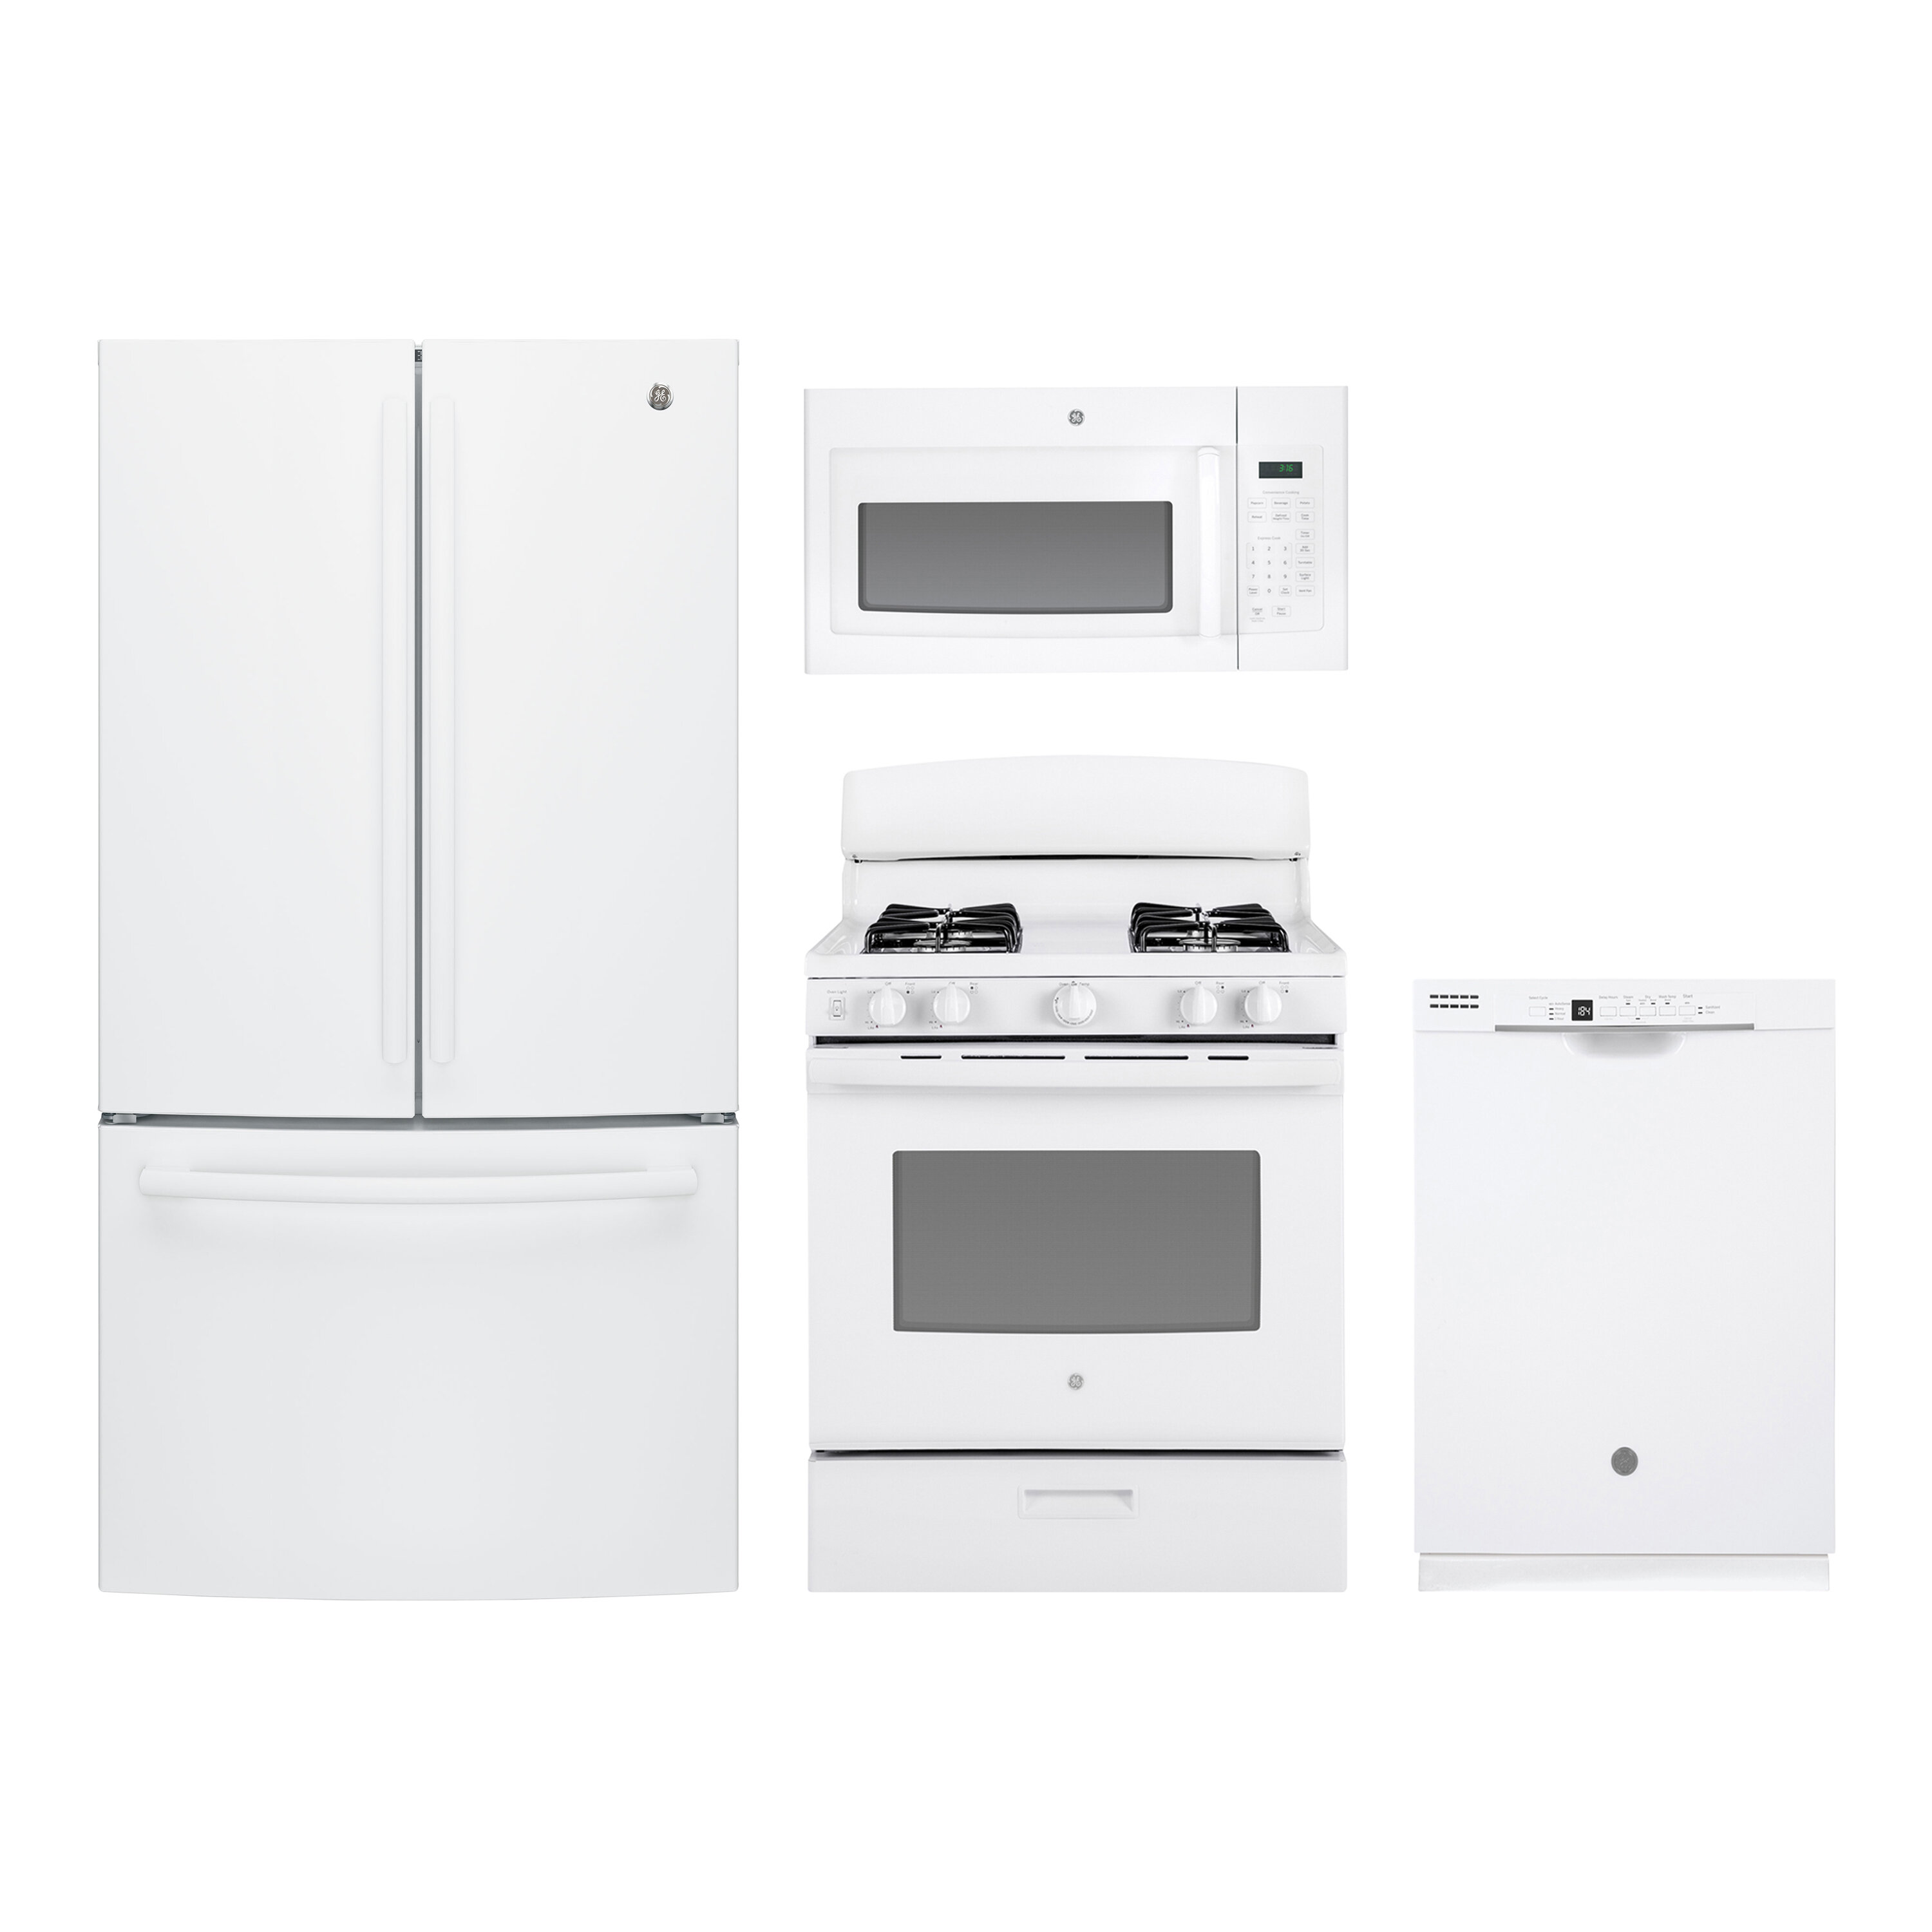  French Door Refrigerator %2526 30%2522 Freestanding Gas Range 